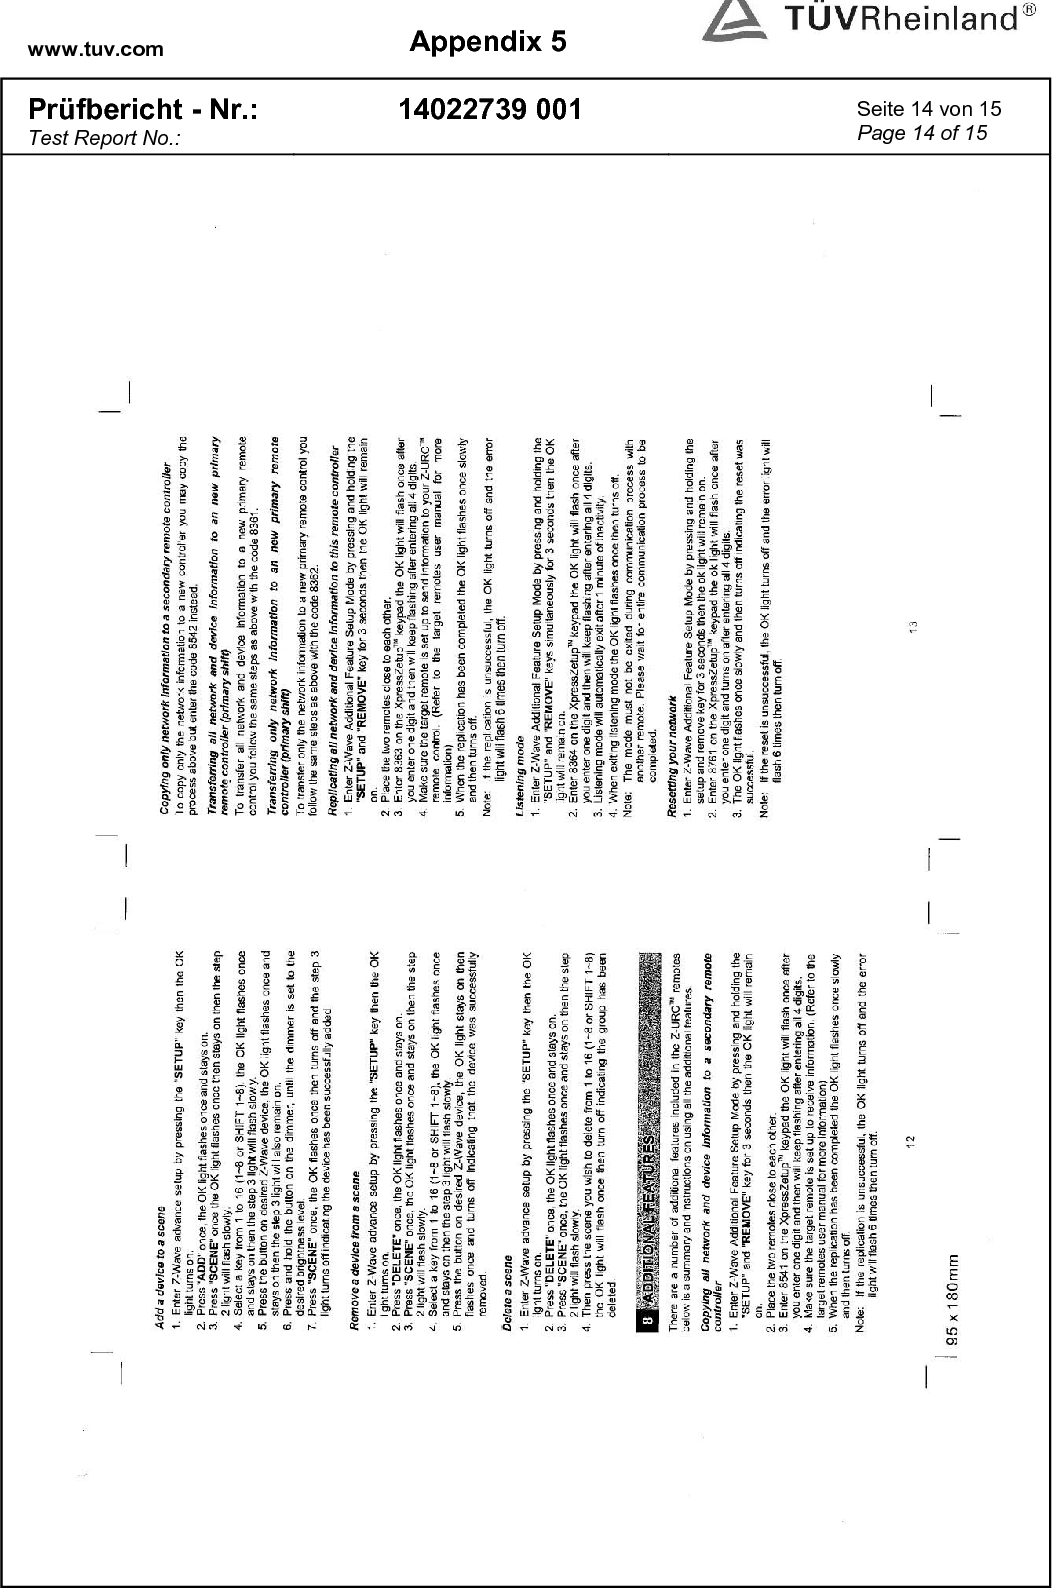 www.tuv.com  Appendix 5  Prüfbericht - Nr.: Test Report No.: 14022739 001  Seite 14 von 15 Page 14 of 15   